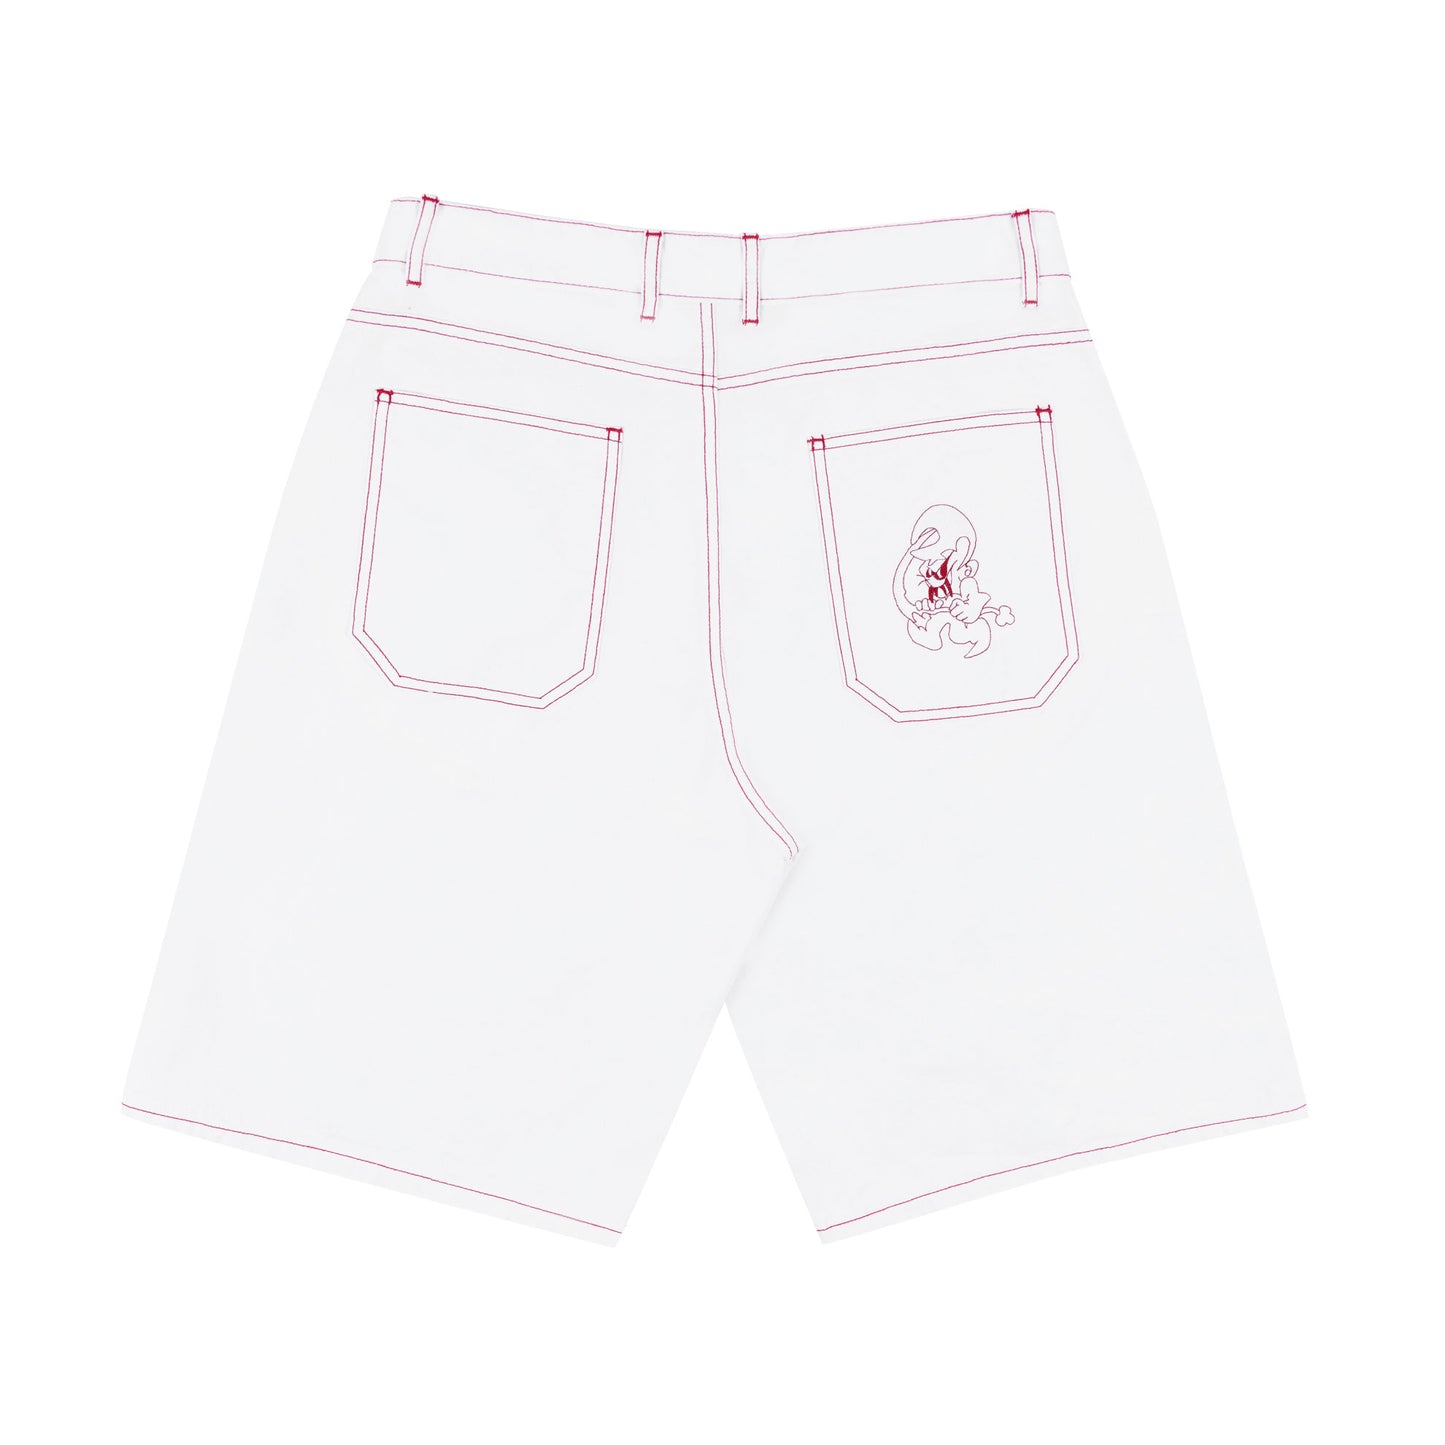 Goblin Slack Shorts (White)